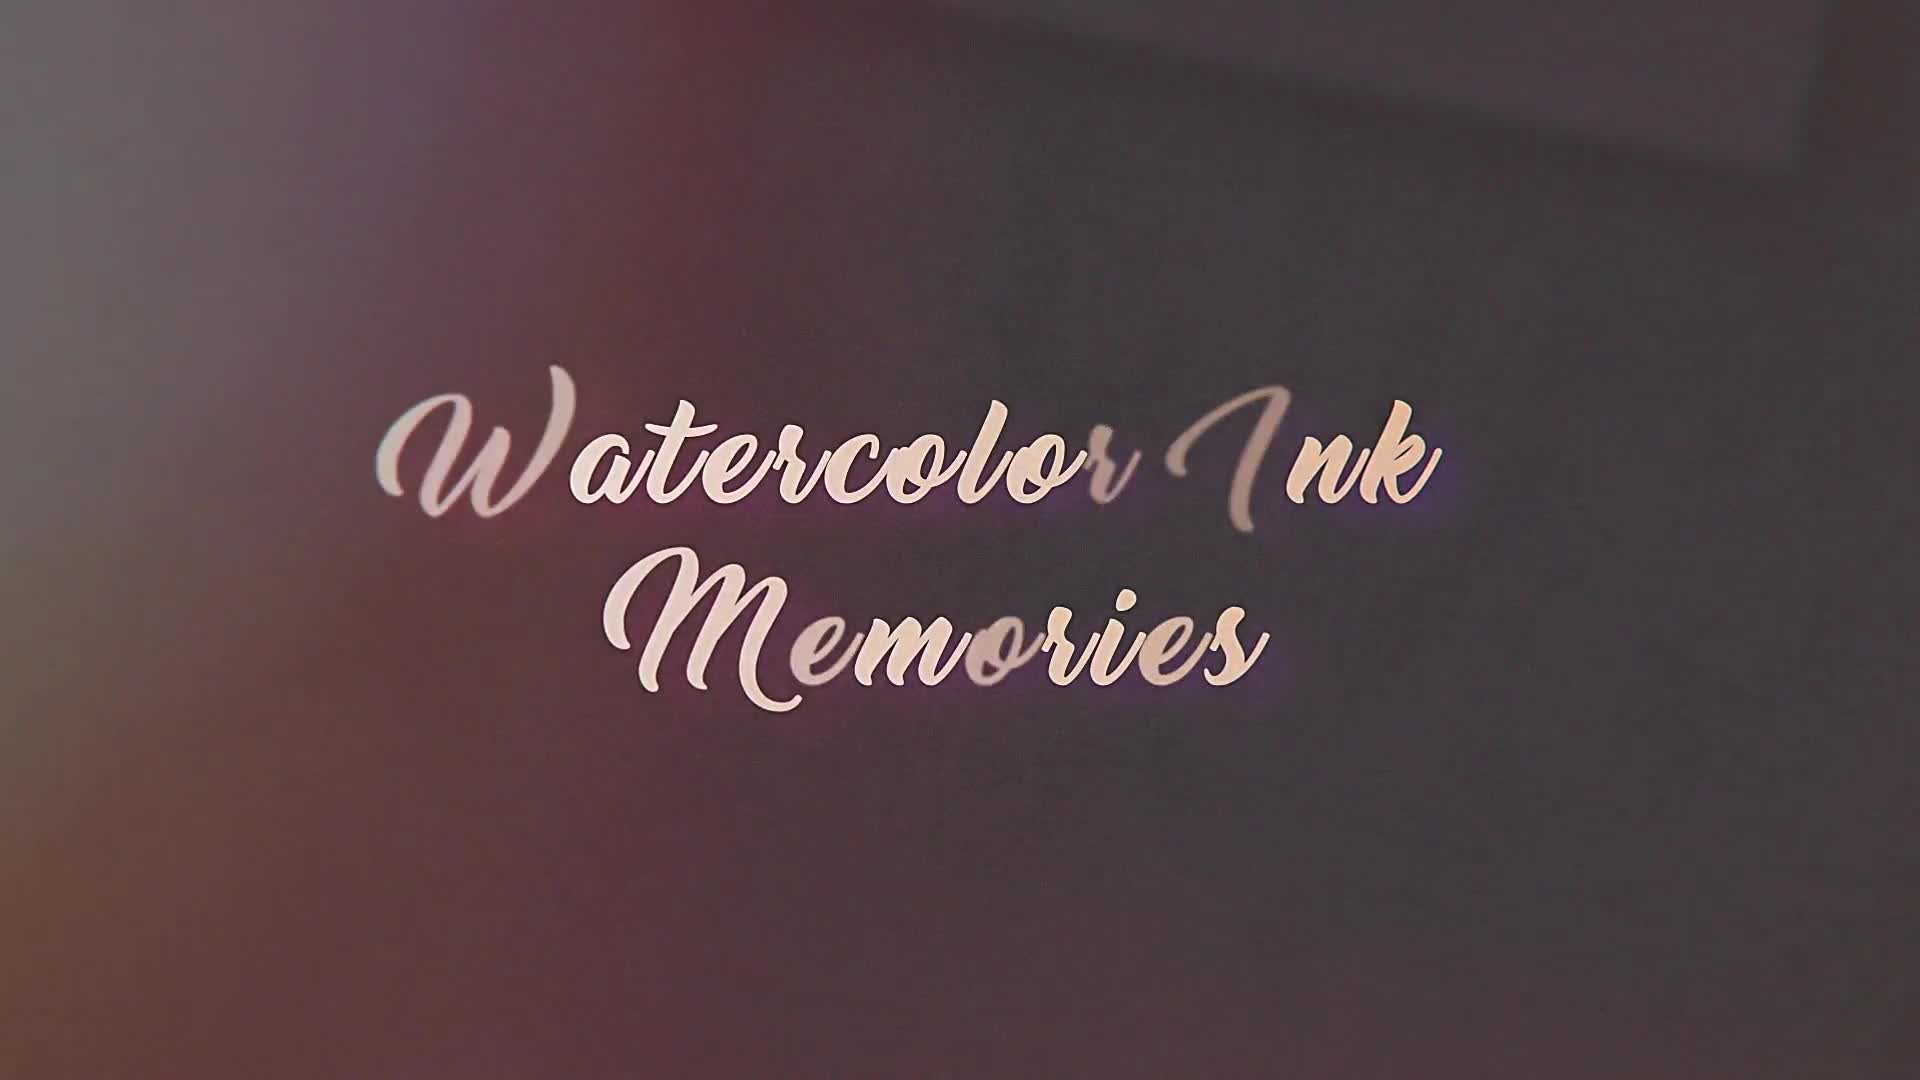 Watercolor Ink Memories - Download Videohive 20690338